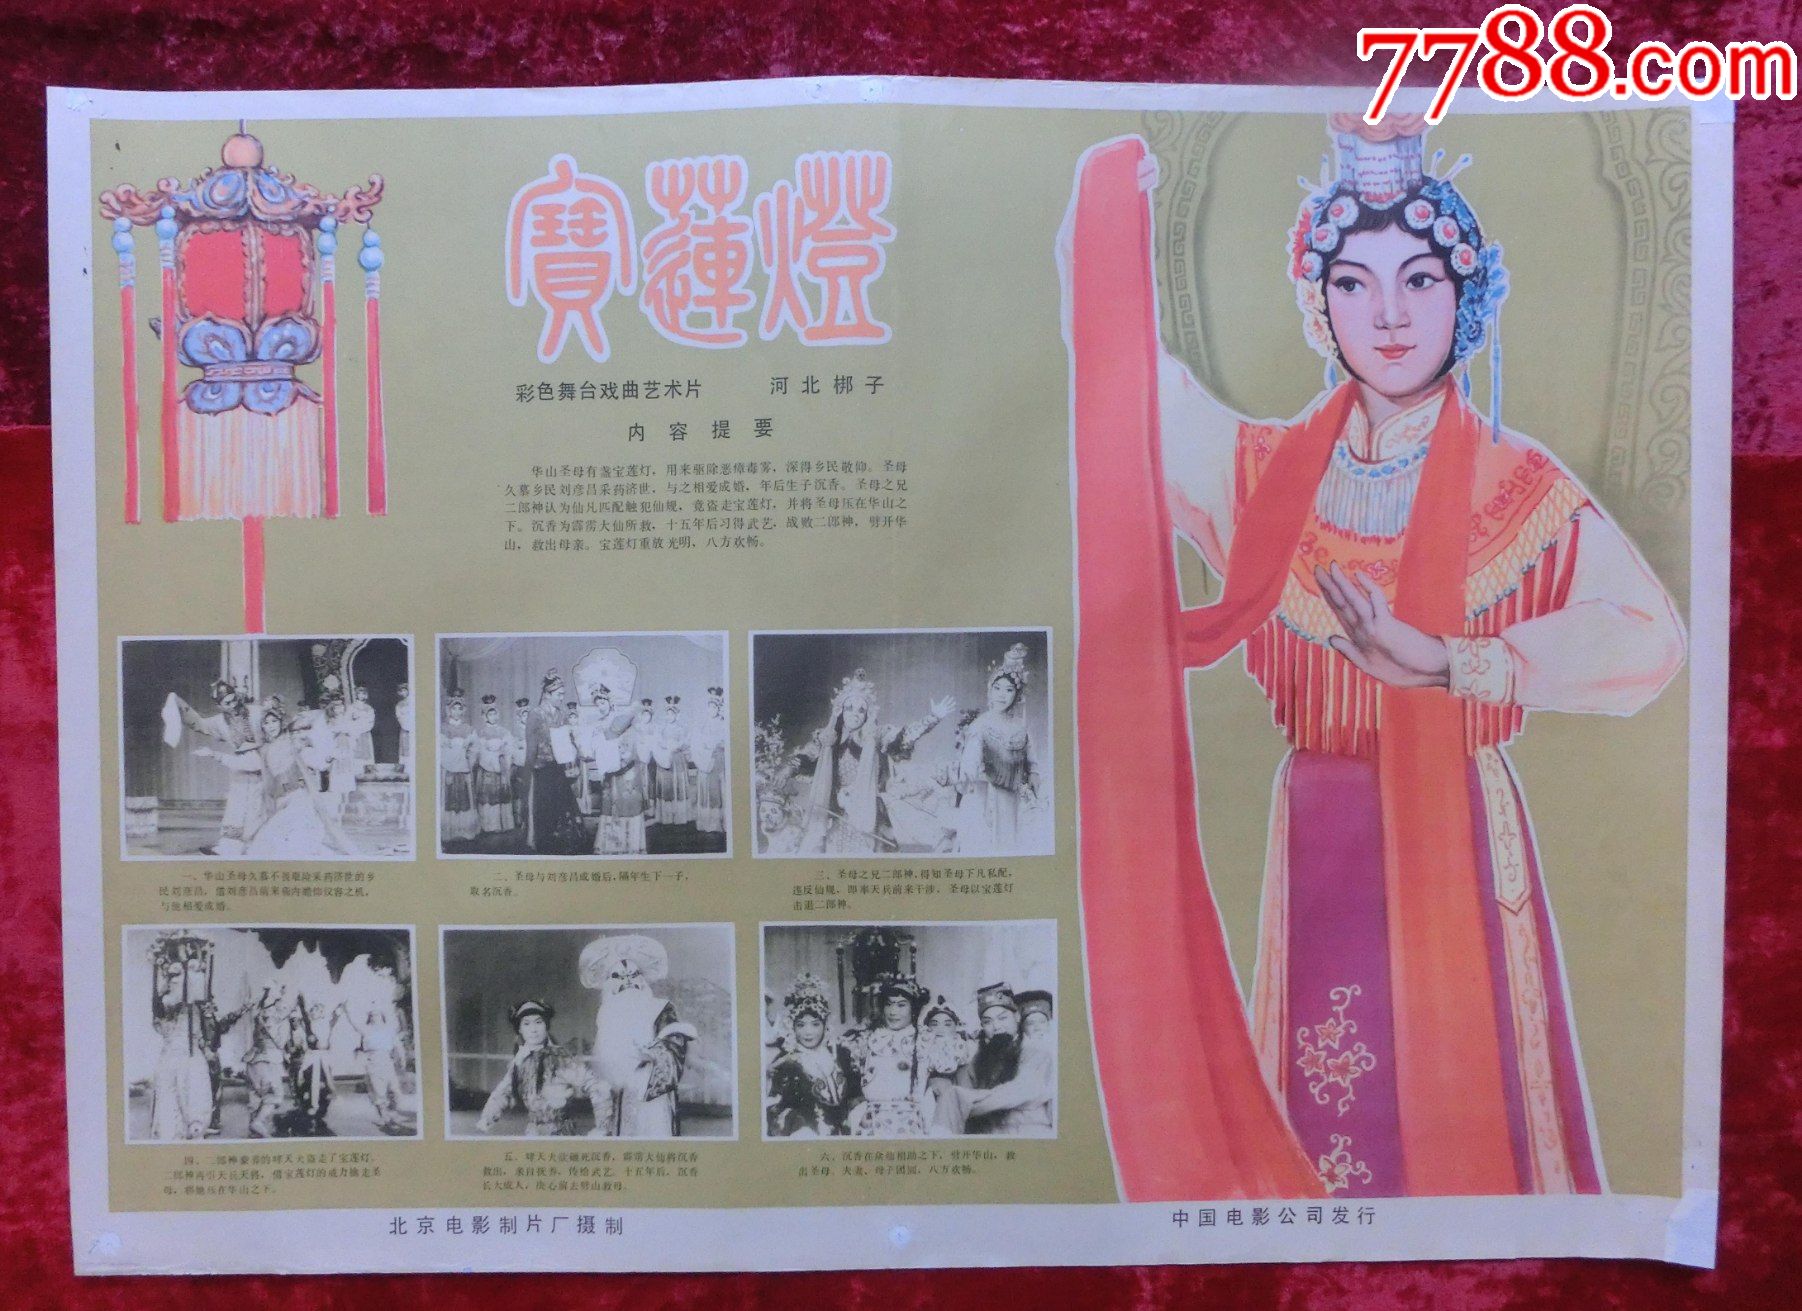 2开电影海报:彩色舞台戏曲艺术片宝莲灯(1978年)